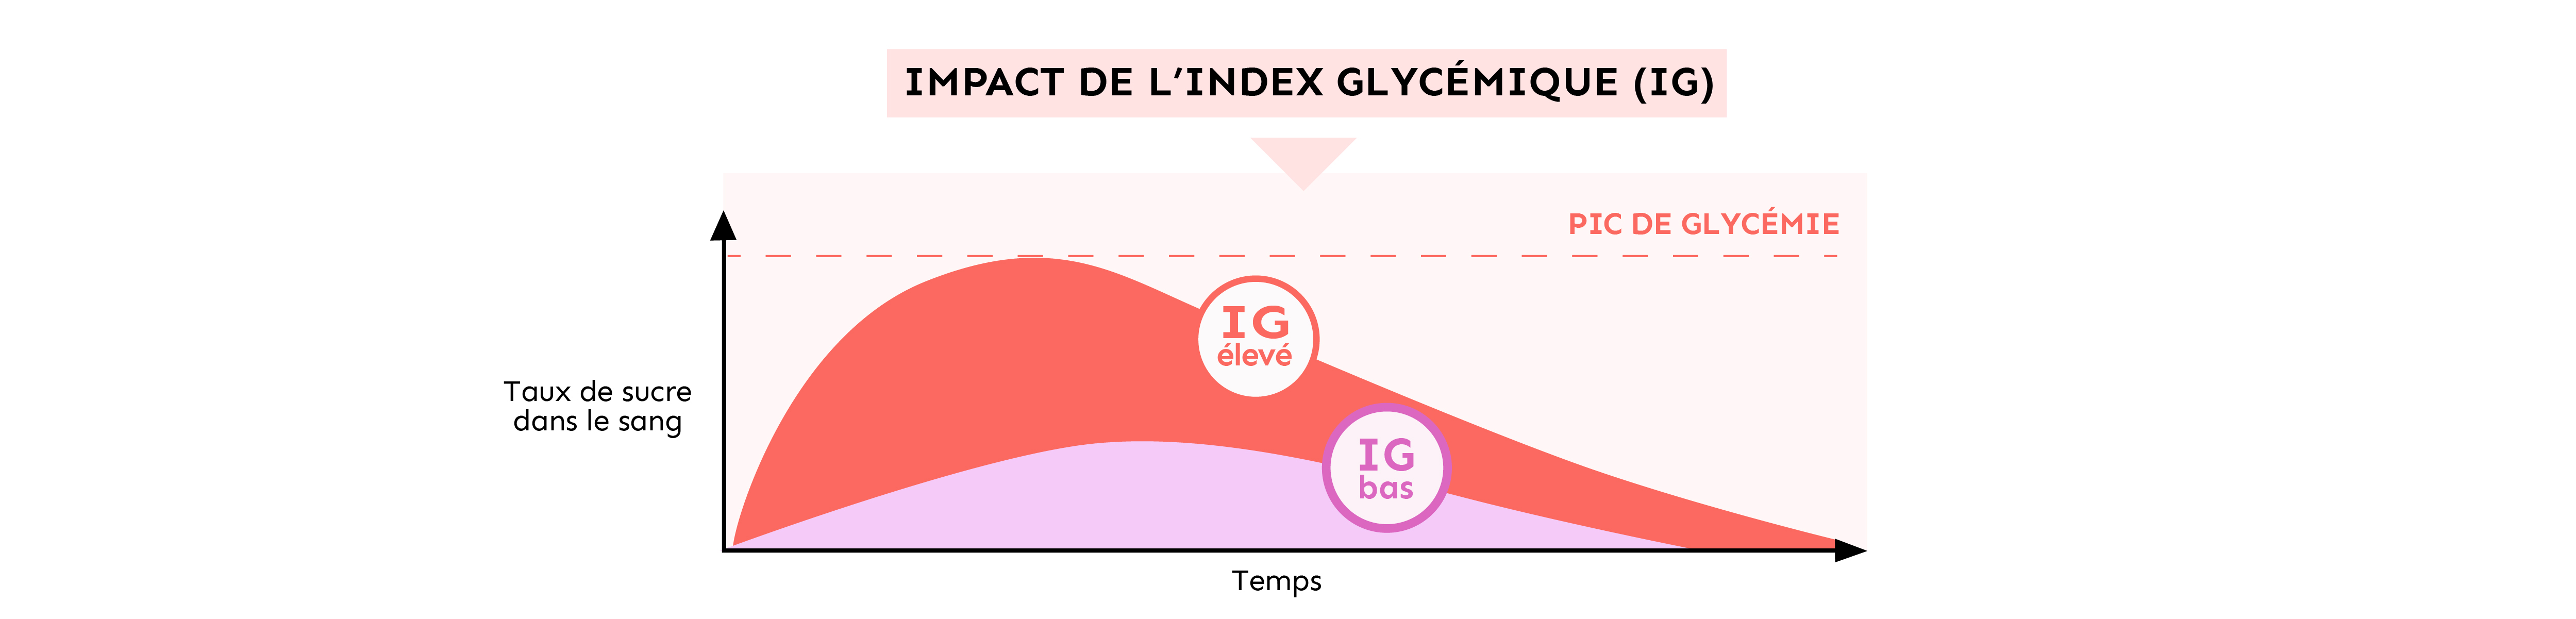 impact de l'indice glycémique